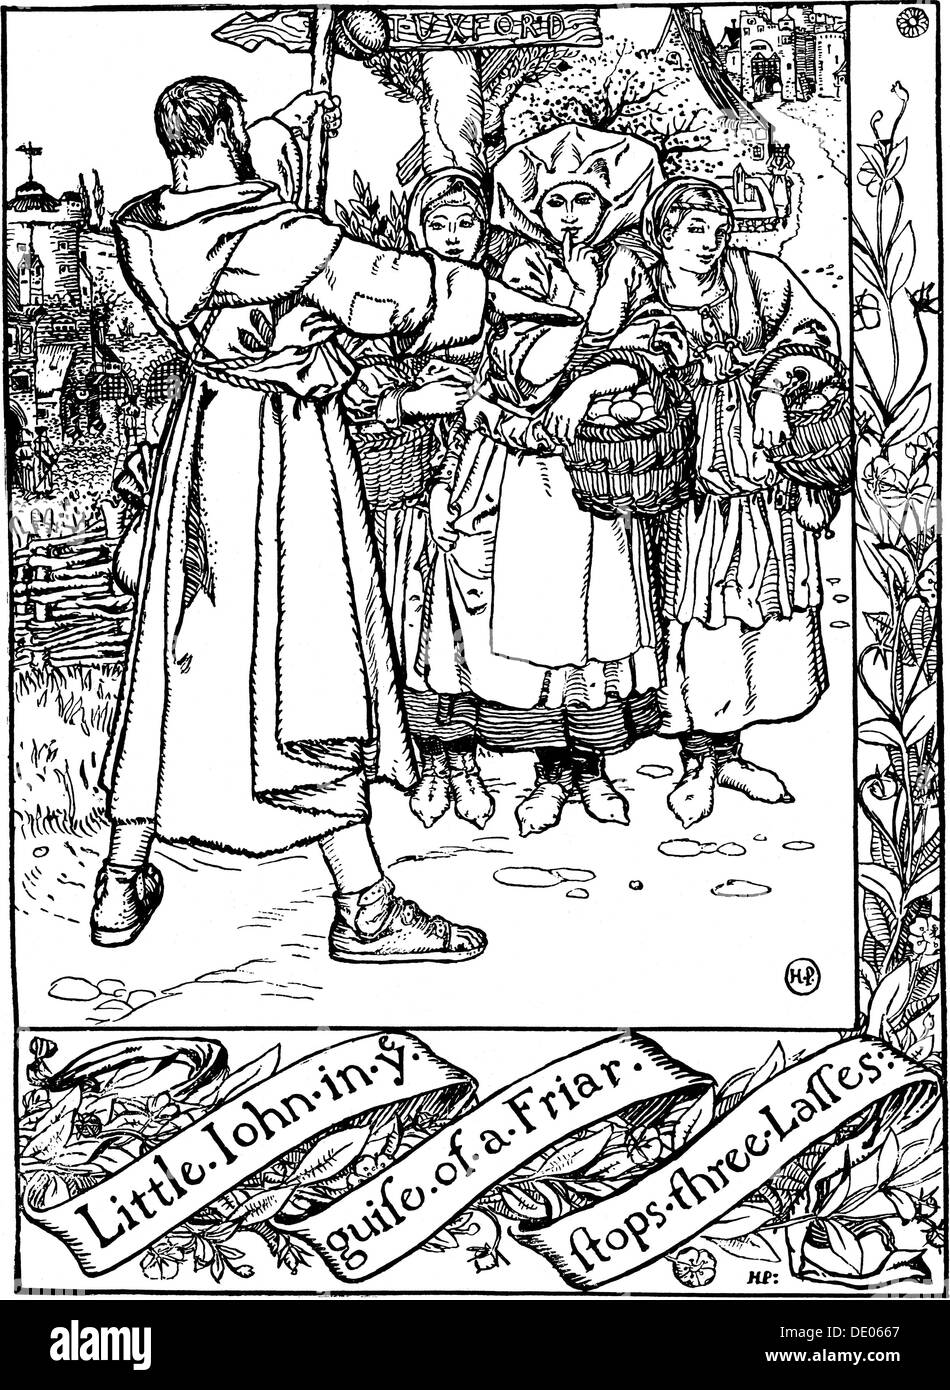 Illustrazione dal libro le allegre avventure di Robin Hood, da Howard Pyle, 1883. Artista: Howard Pyle Foto Stock